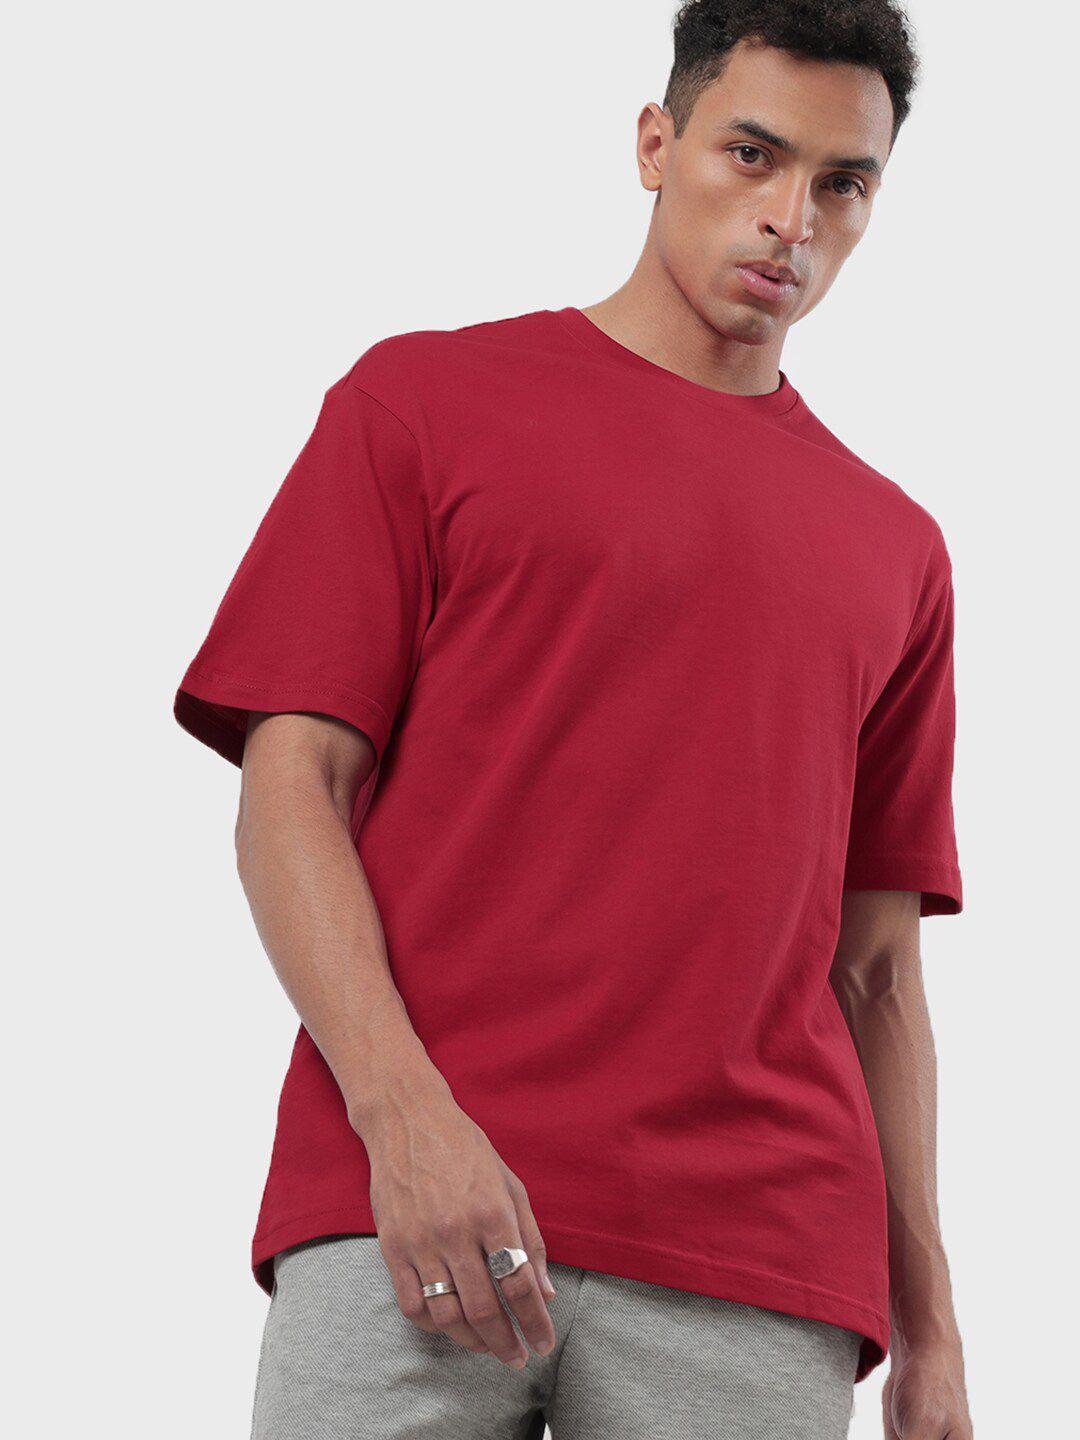 bewakoof men red oversized t-shirt